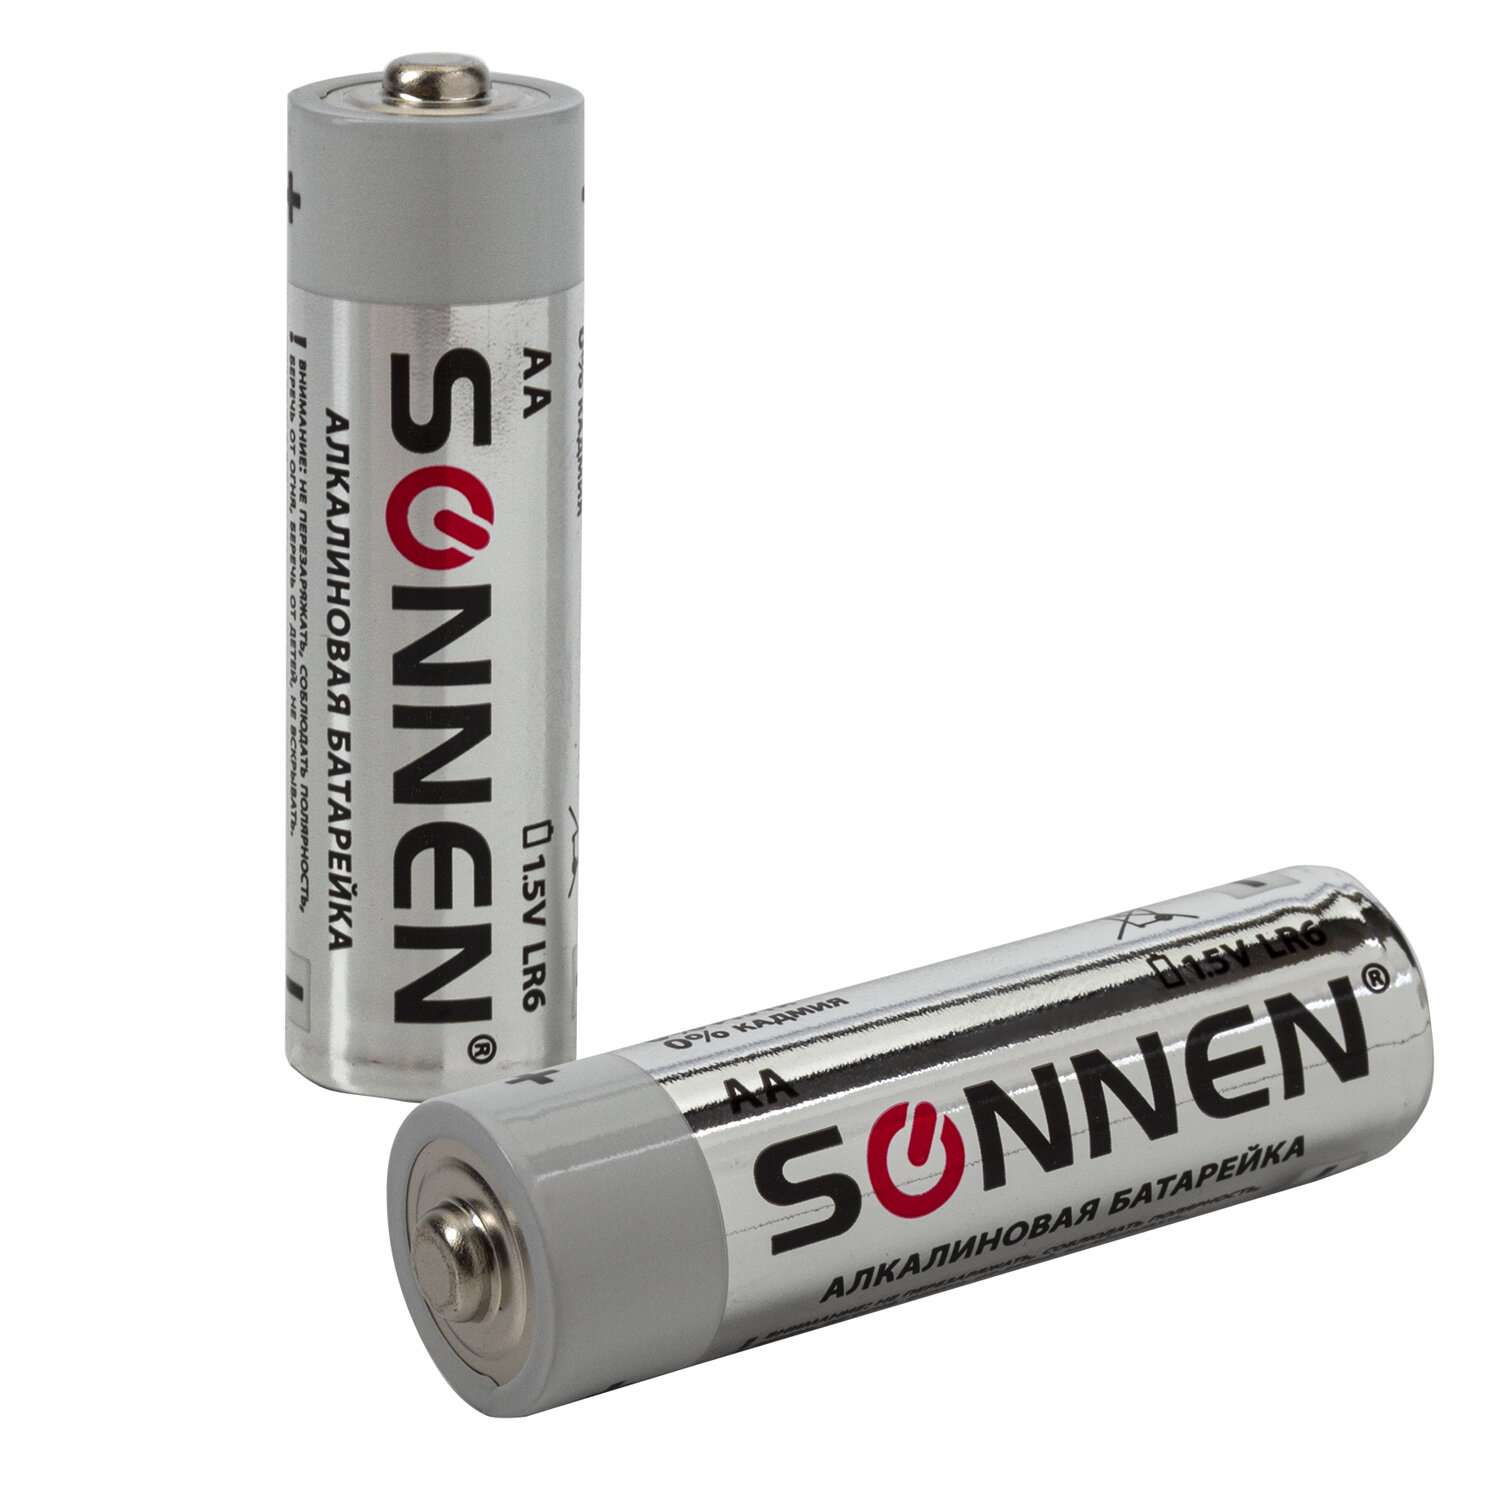 Батарейки Sonnen пальчиковые АА алкалиновые 24 штуки для пульта часов весов фонарика - фото 8